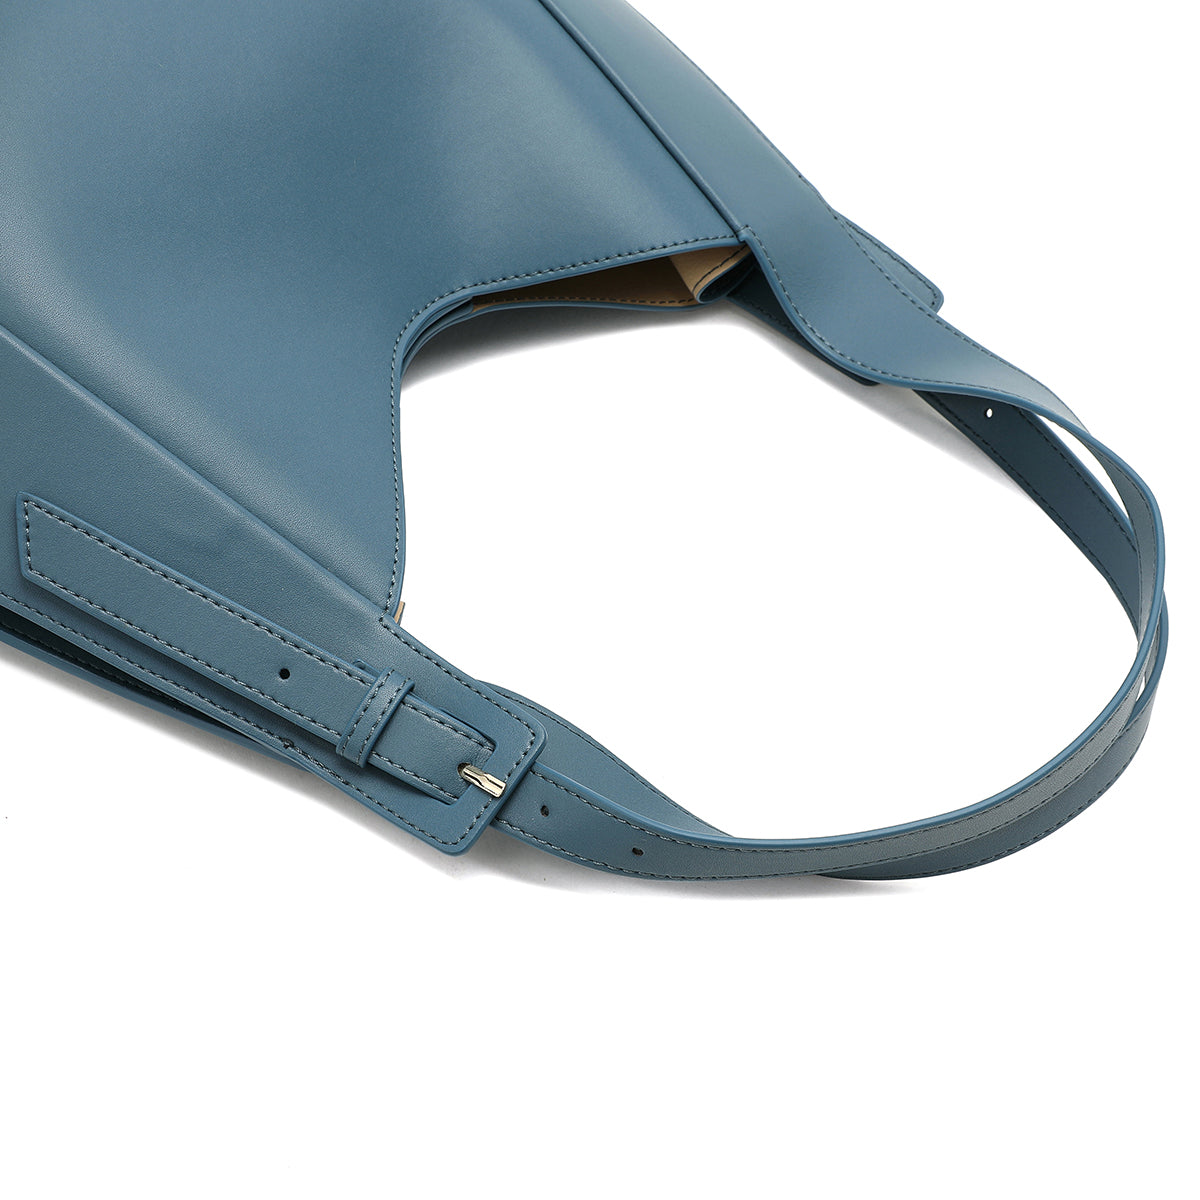 تفاصيل حزام قابل للتعديل على شنطة يد نسائية من الجلد باللون الأزرق الفاتح.